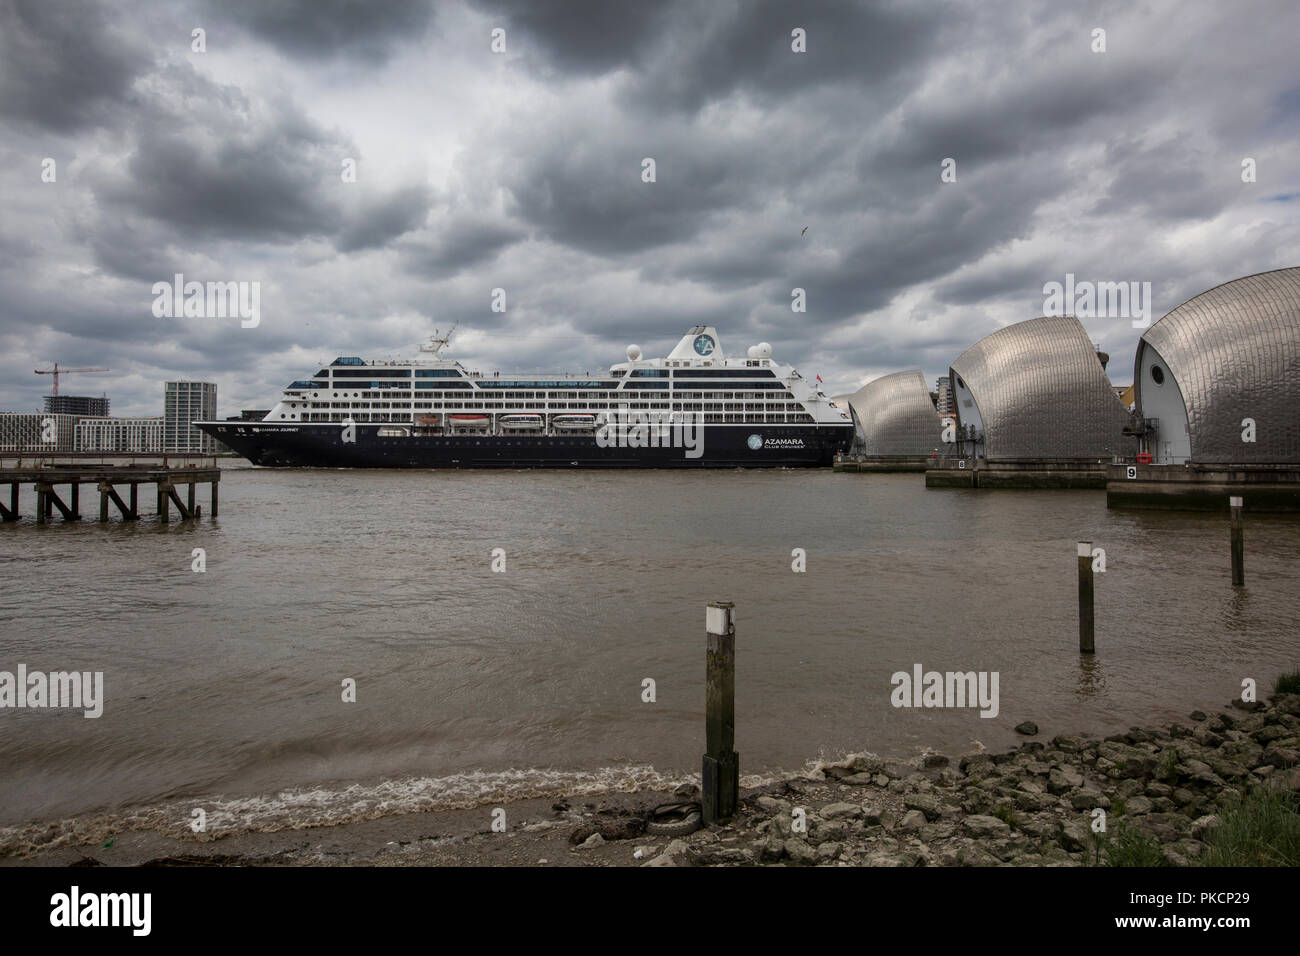 Azamara nave da crociera passa attraverso la Thames Barrier, mobile flood barrier situato sul Fiume Tamigi nel Sud Est di Londra, Inghilterra, Regno Unito Foto Stock